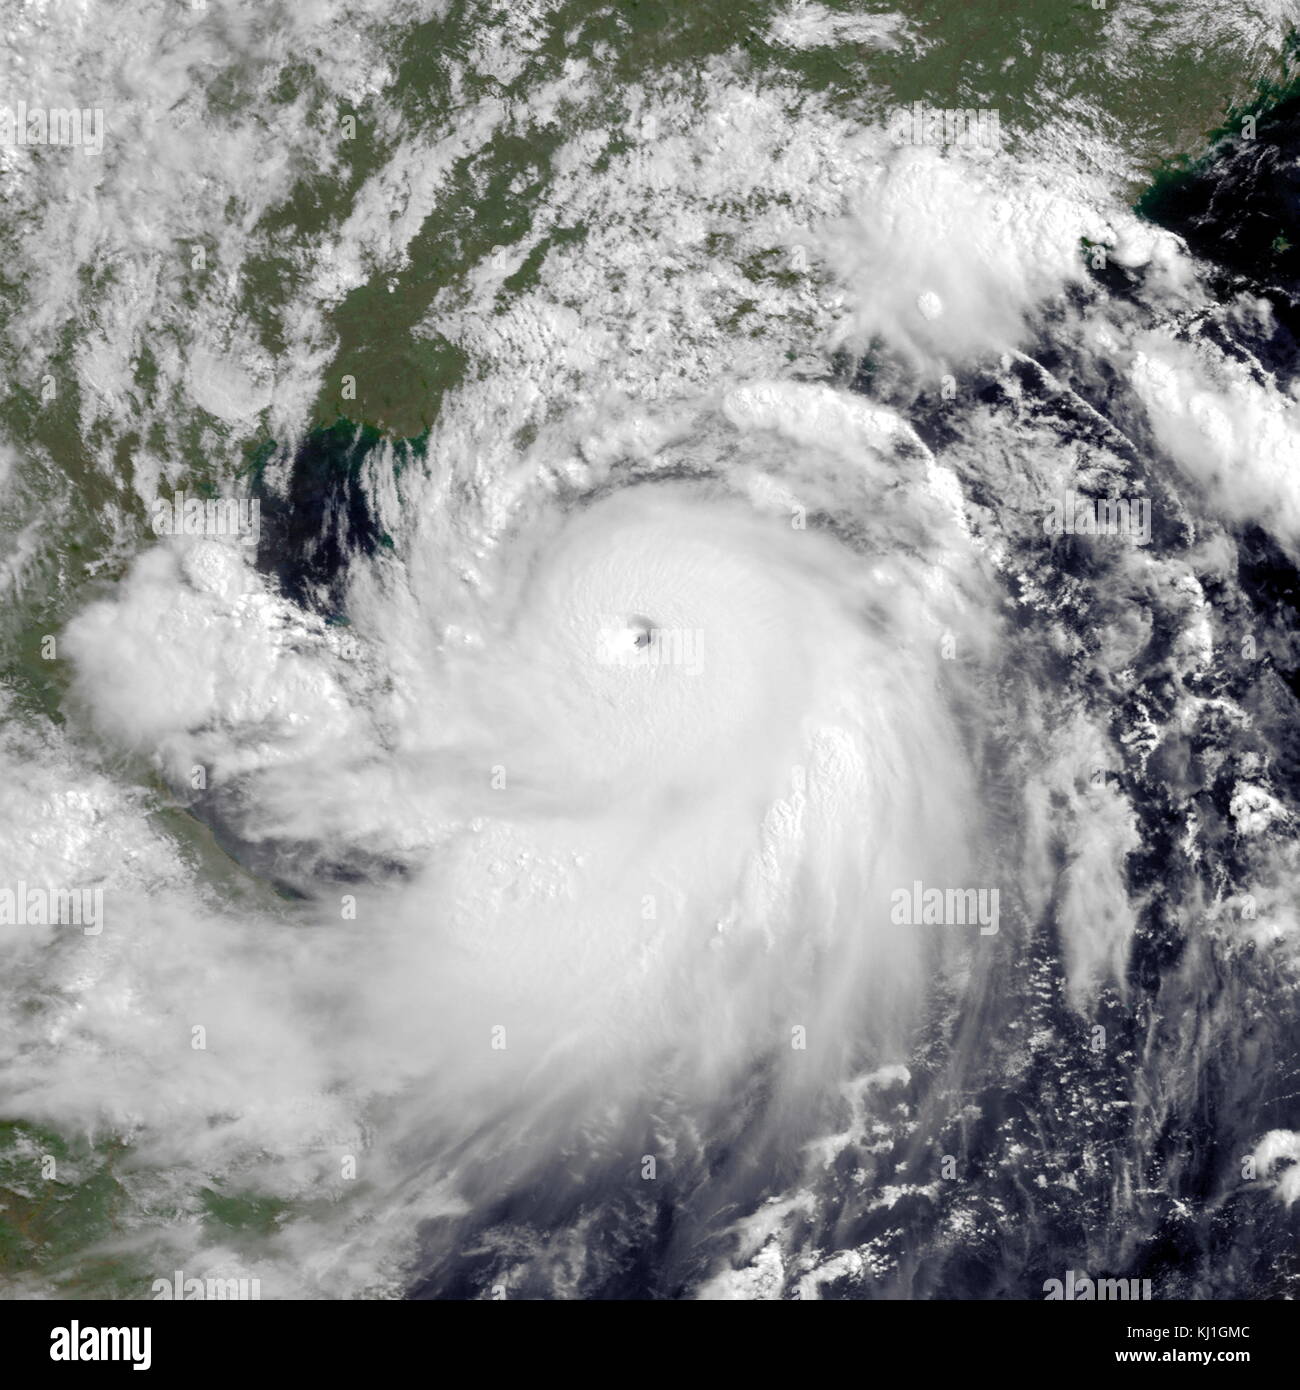 Typhoon Rammasun, noto nelle Filippine come Typhoon Glenda, è solo uno dei due categoria 5 super tifoni sul record nel Mare della Cina del Sud, con l'altro essendo Pamela nel 1954. Rammasun ha avuto impatti distruttivi nelle Filippine Sud, in Cina e in Vietnam nel luglio 2014. Foto Stock